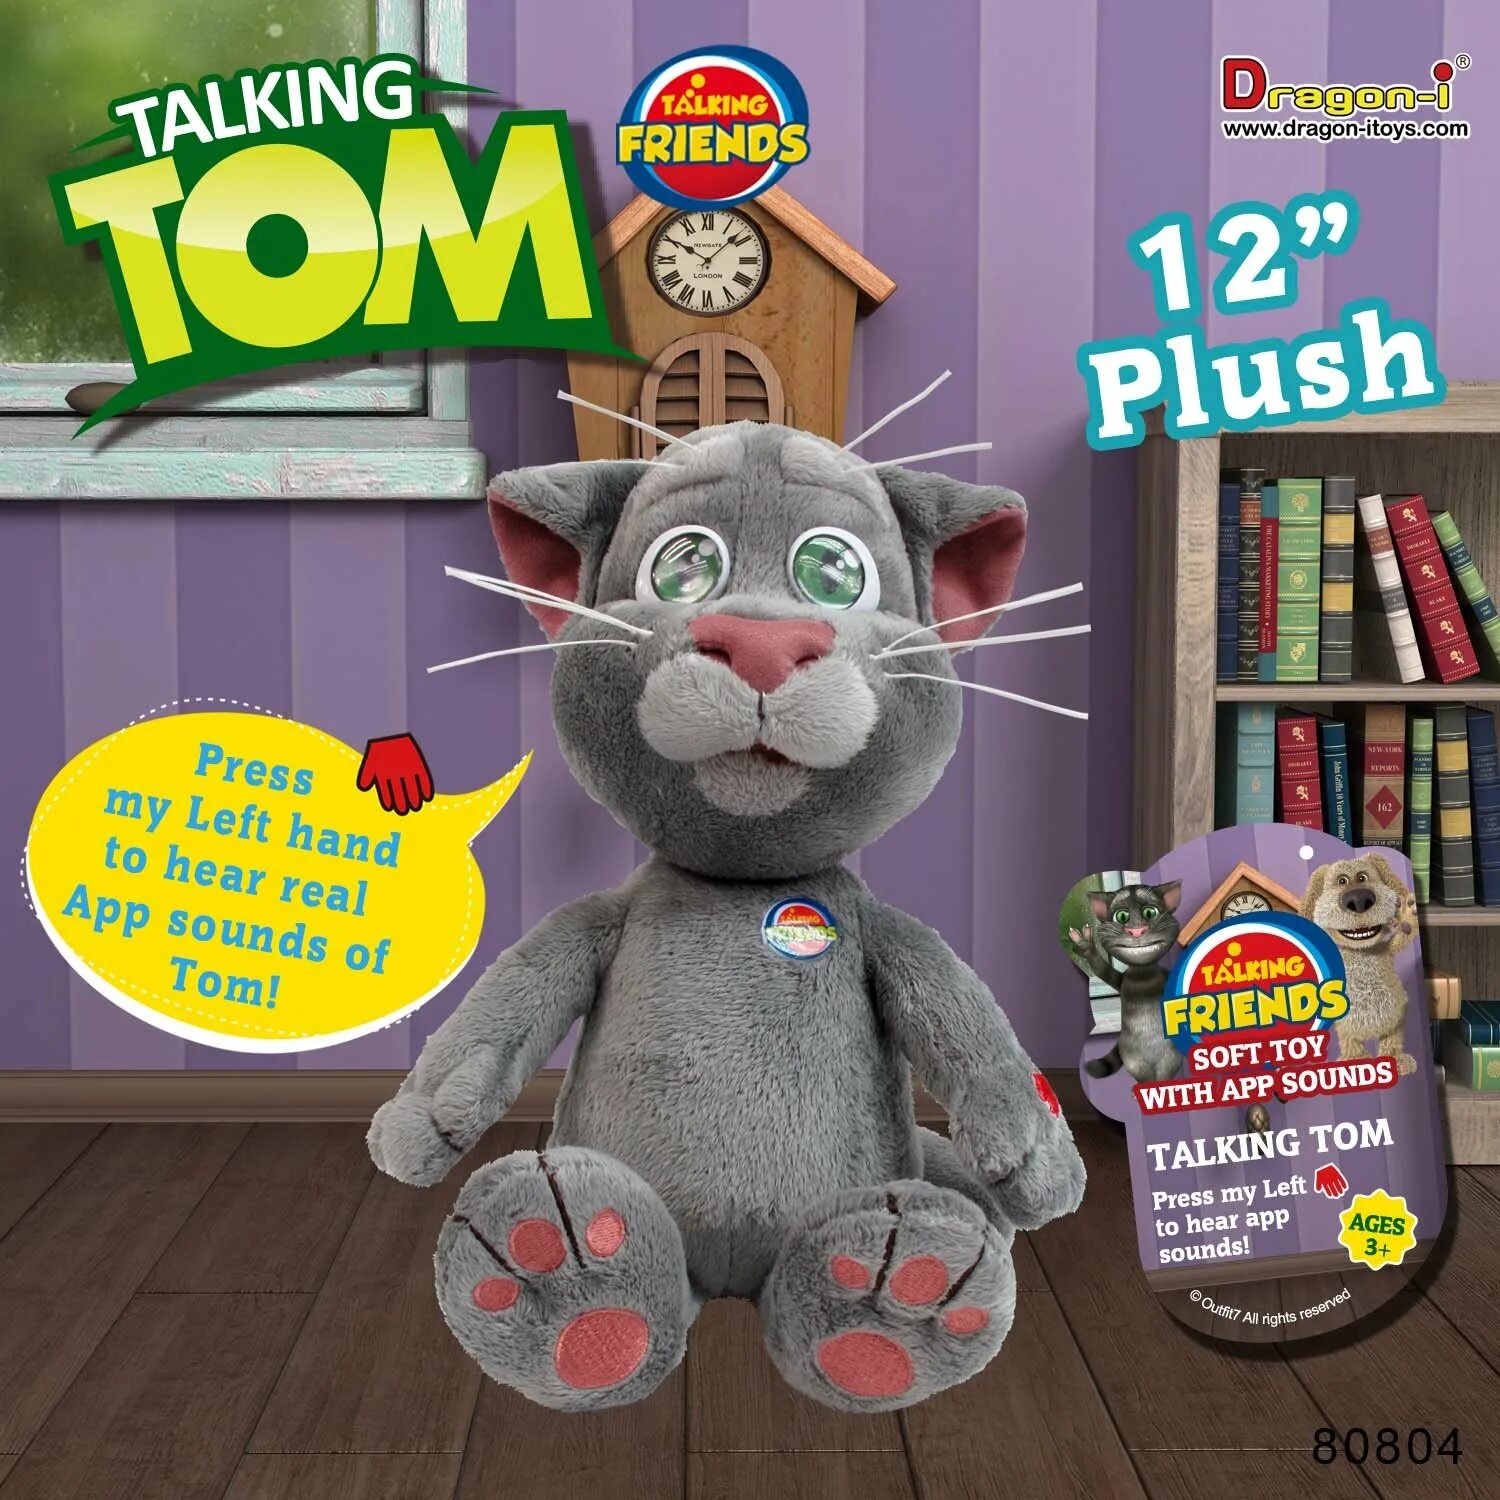 Toy talk. Интерактивная игрушка talking Tom. Интерактивная игрушка кот том Джинджер. Игрушка talking friends Toys. Интерактивная игрушка Dragon-i говорящий том.